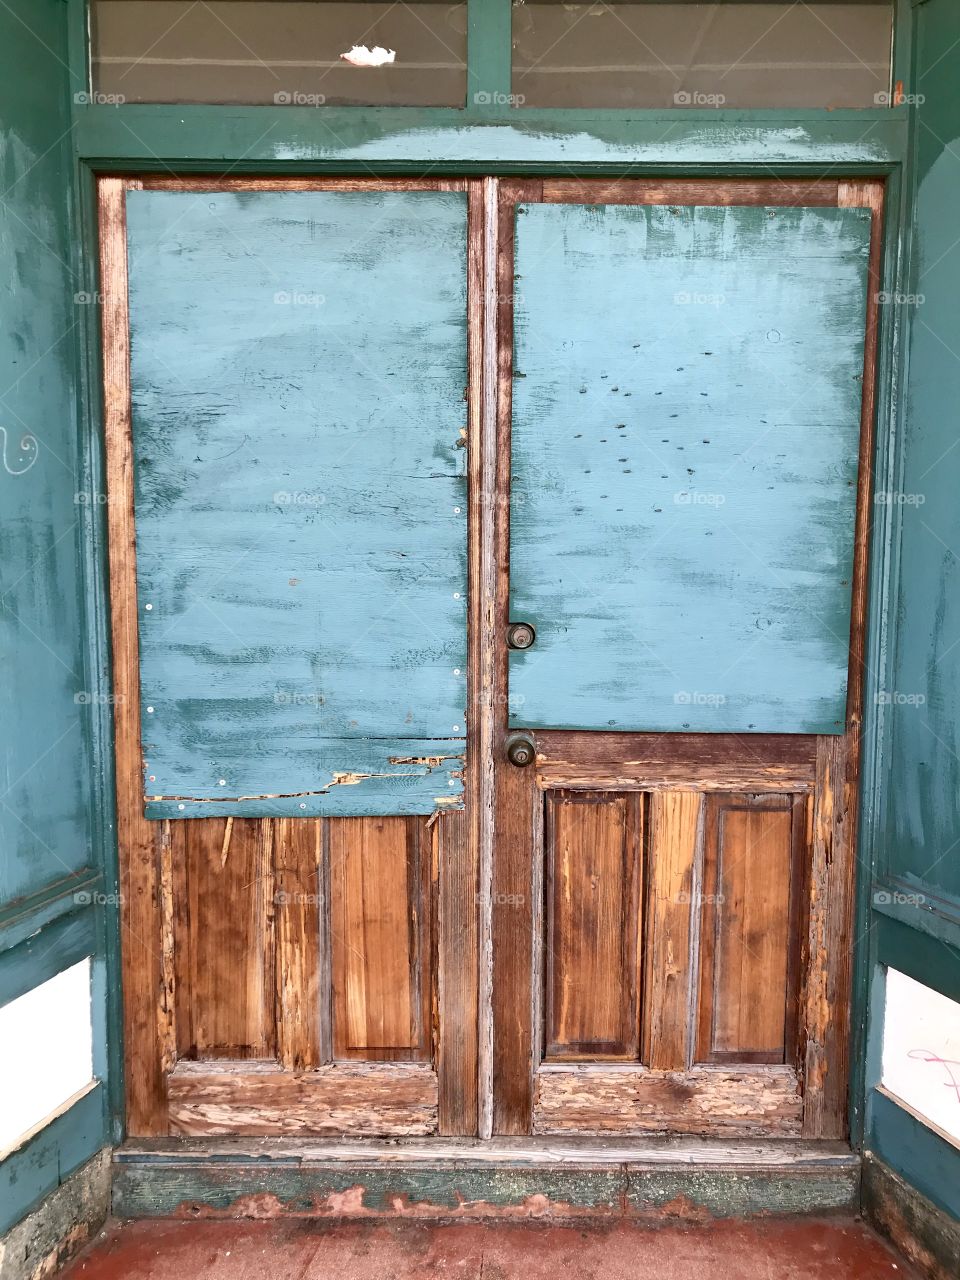 Old blue doors